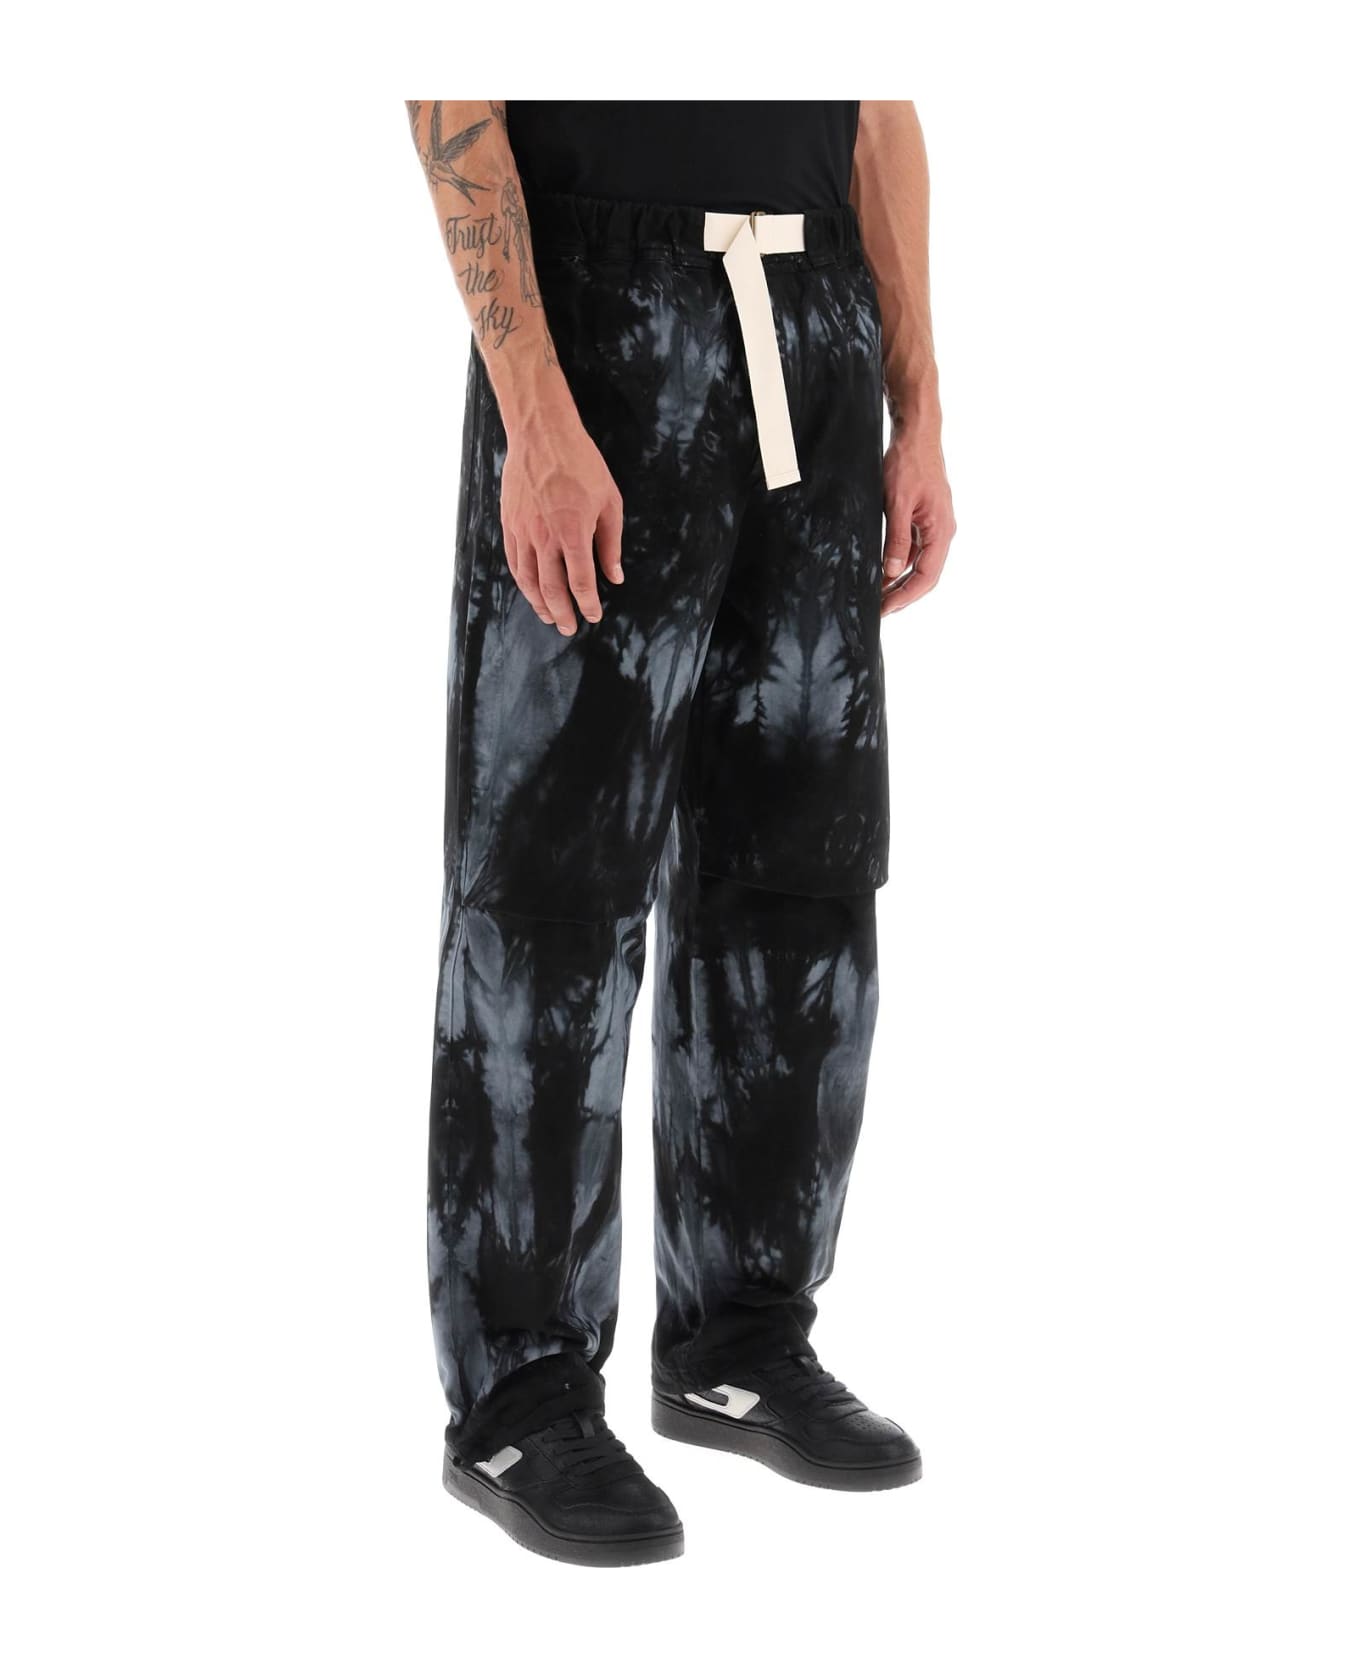 DARKPARK Jordan Tie-dye Pants - BLACK GREY (Grey)